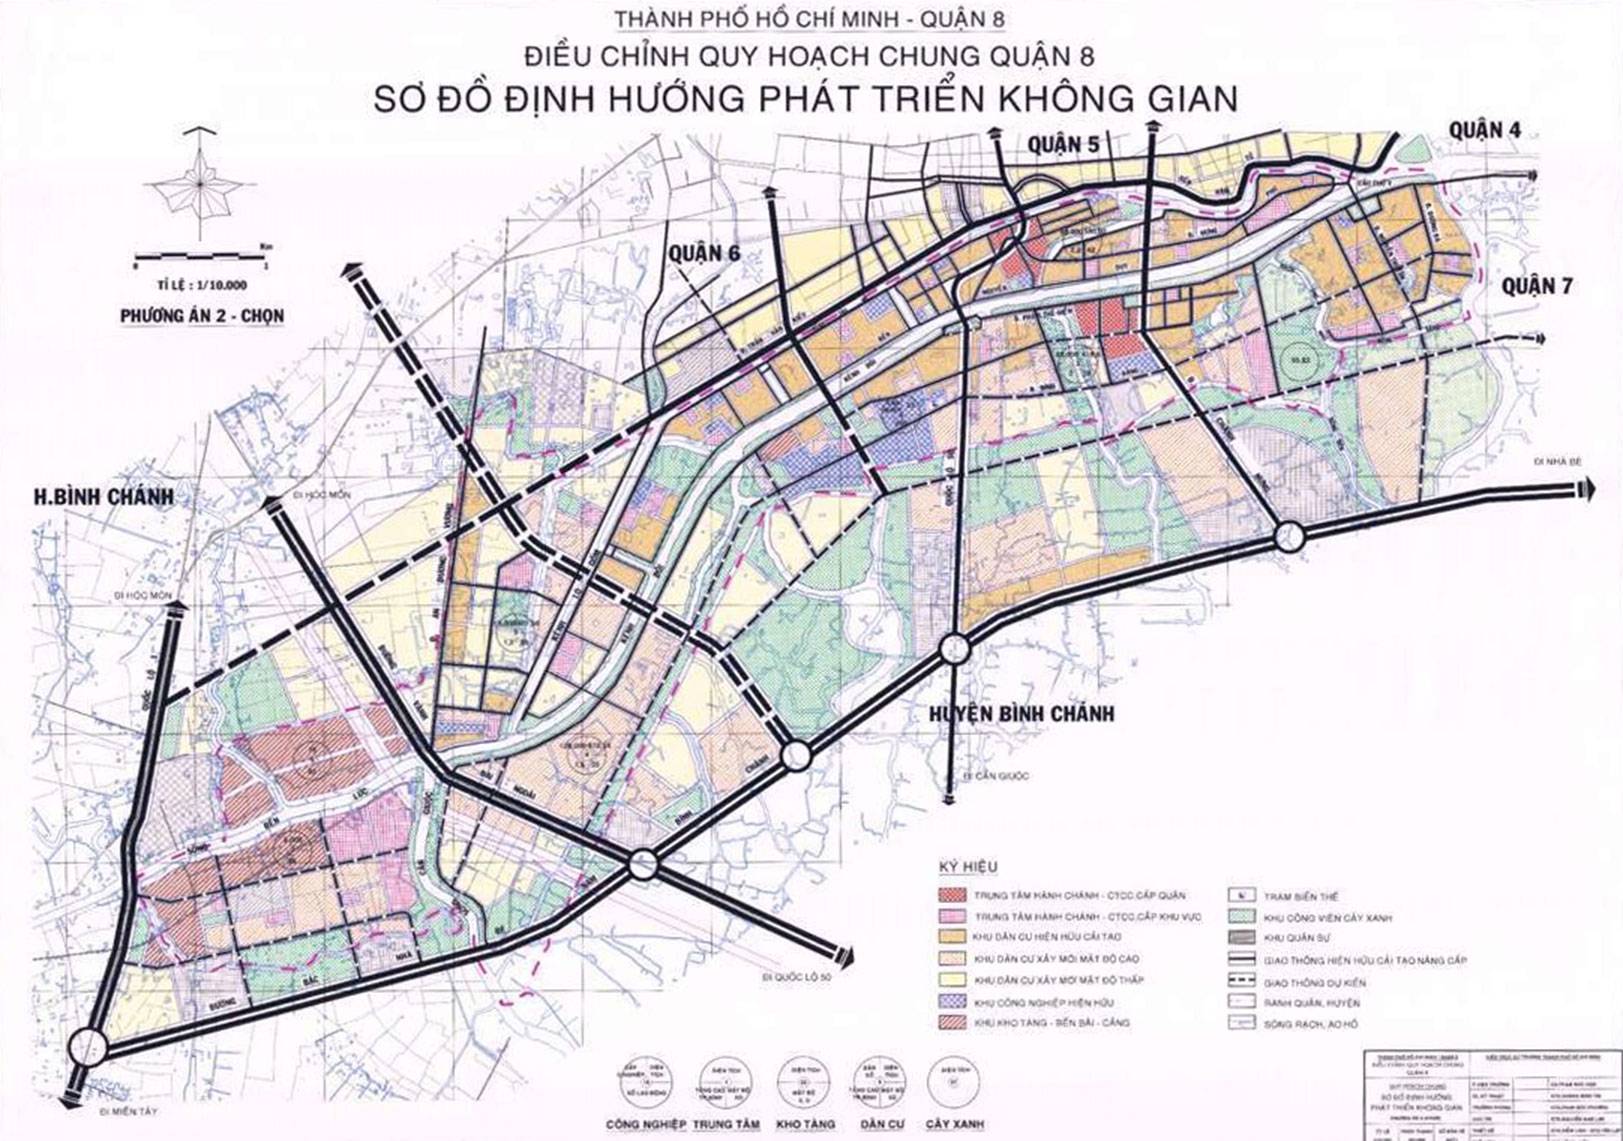 Sơ đồ định hướng phát triển không gian quận 8 đến năm 2025 - Đồ án quy hoạch quận 8 - Yeshouse